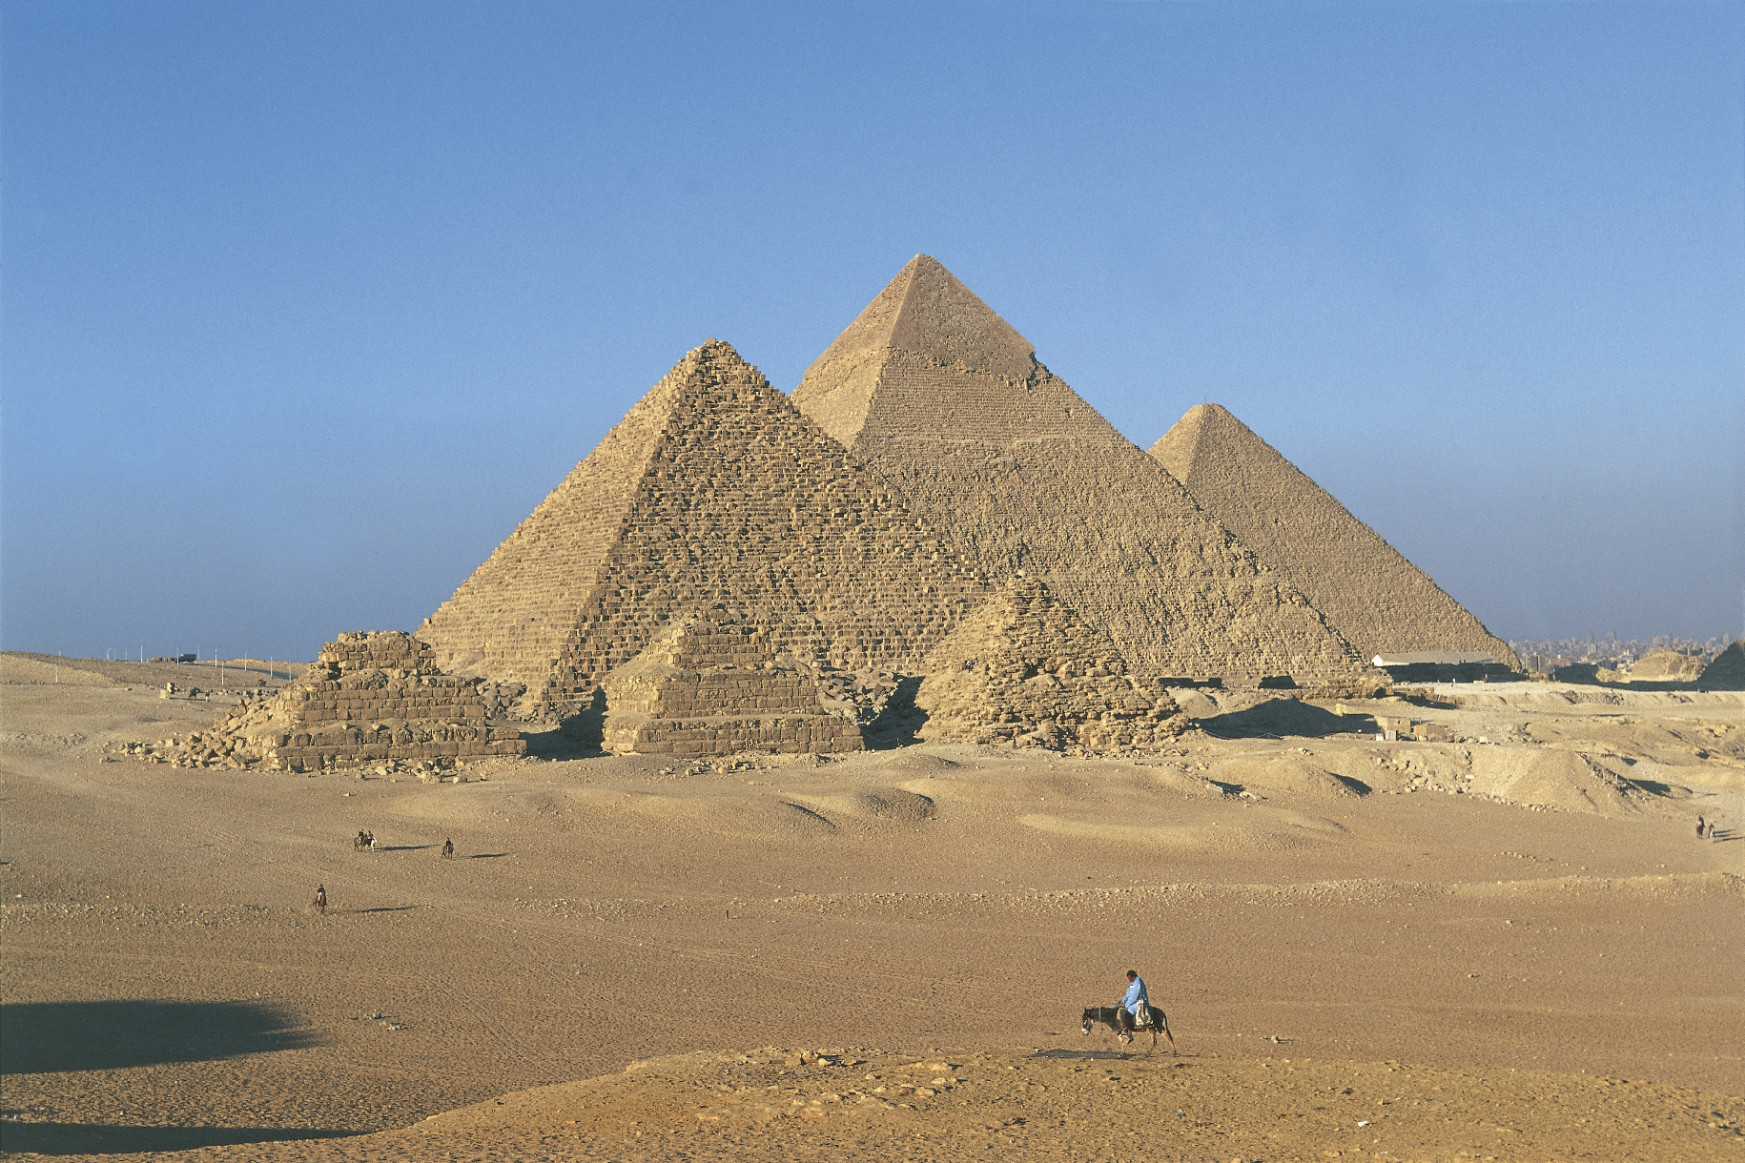 Miért álltak le az egyiptomiak a piramisok építésével?